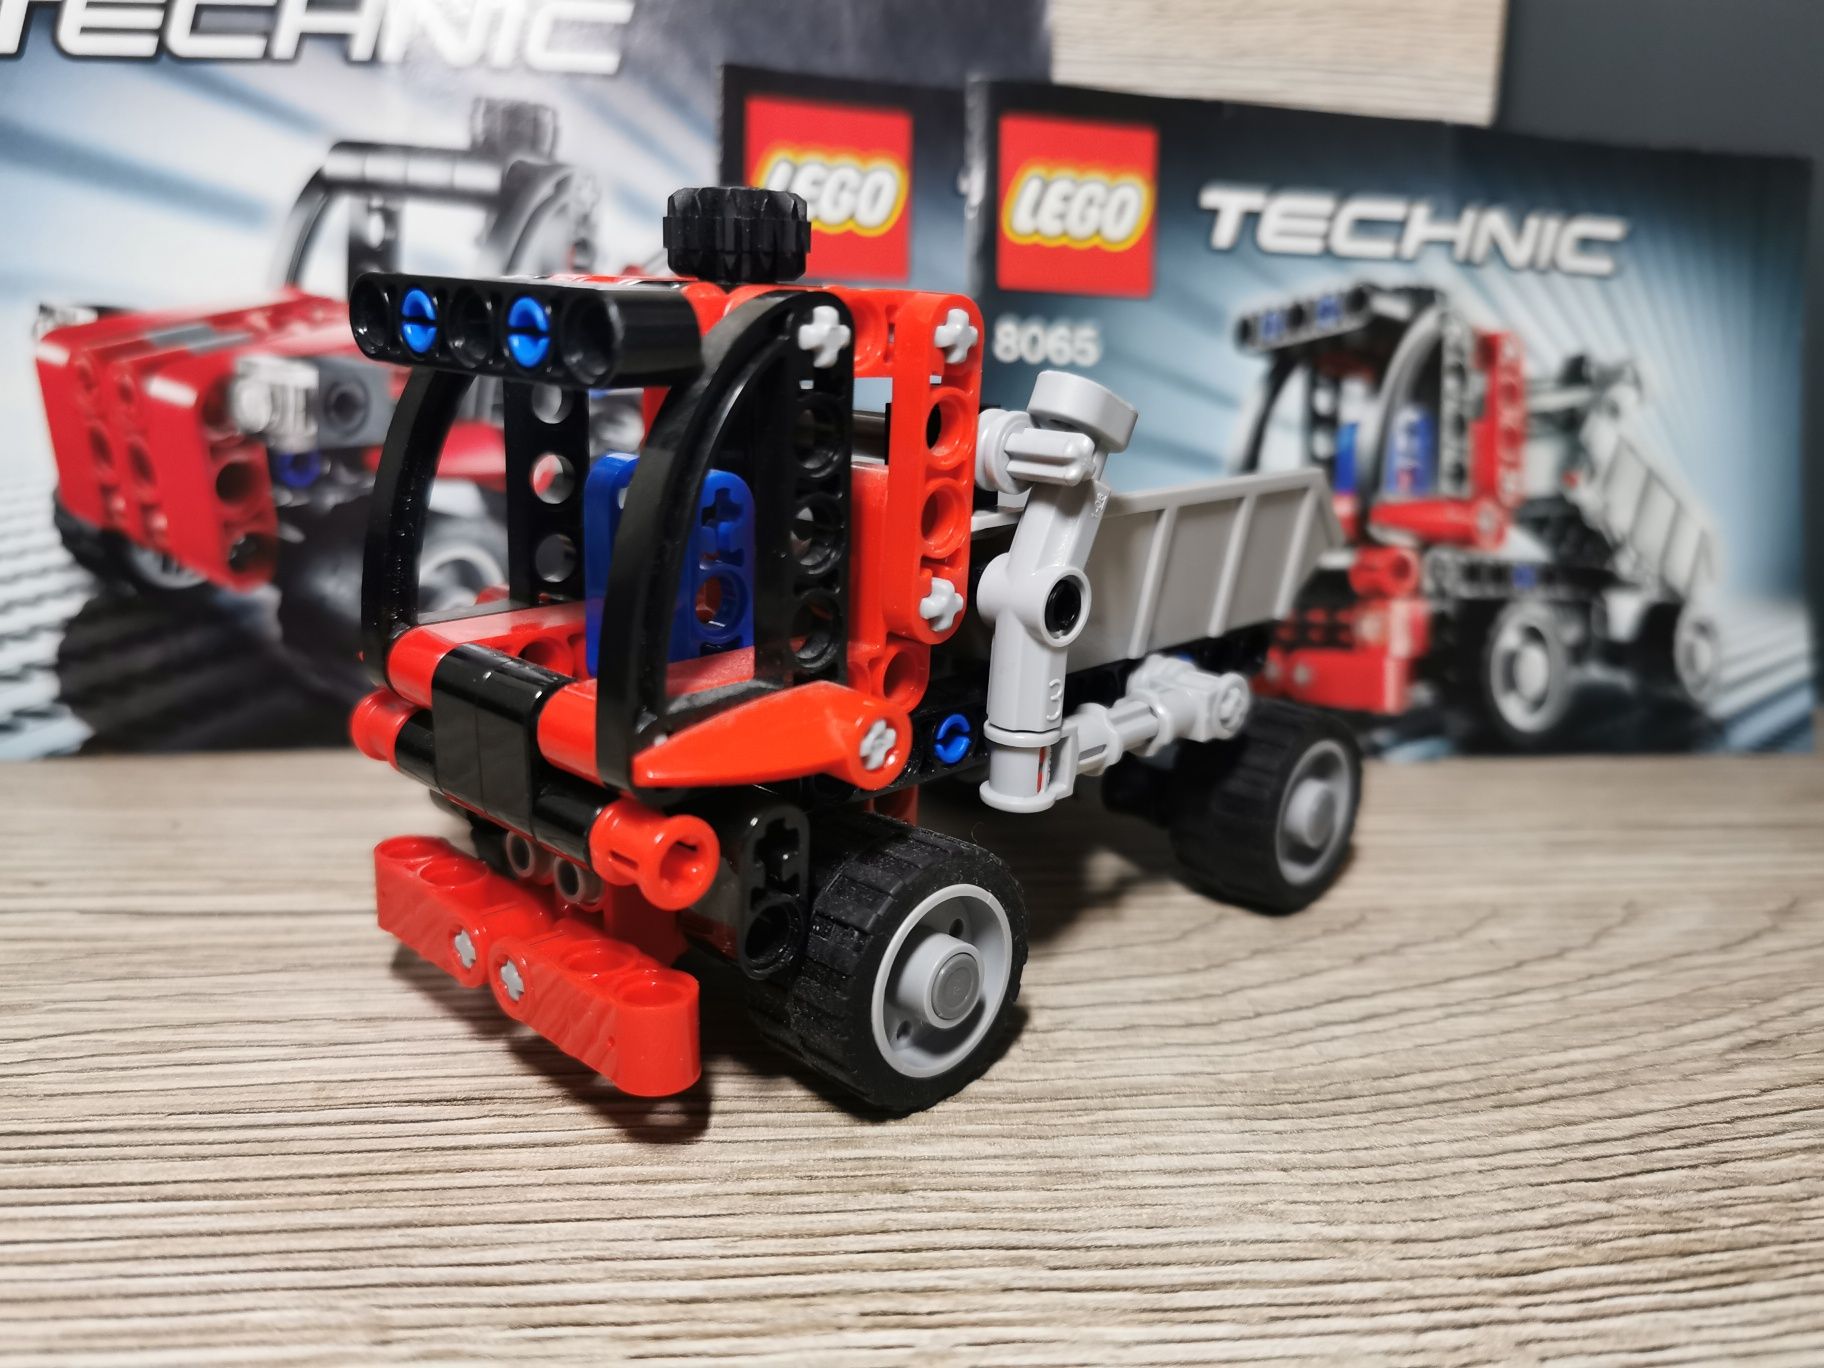 Lego Technic 8065 Mała ciężarówka kompletny